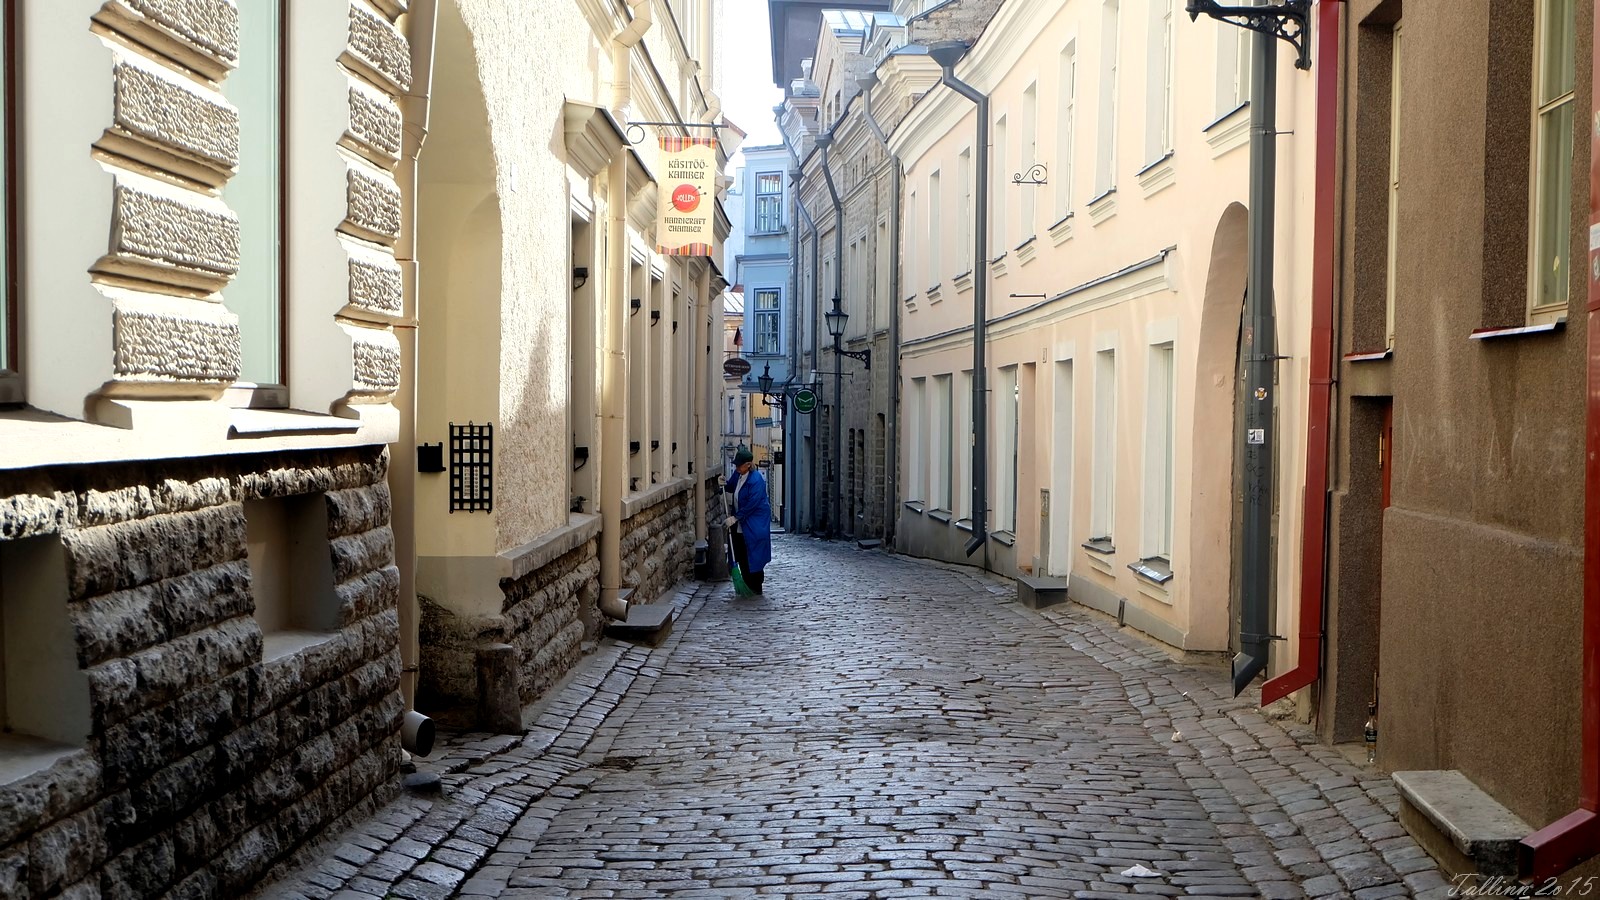 VanaLinn, Tallinn, Estonia